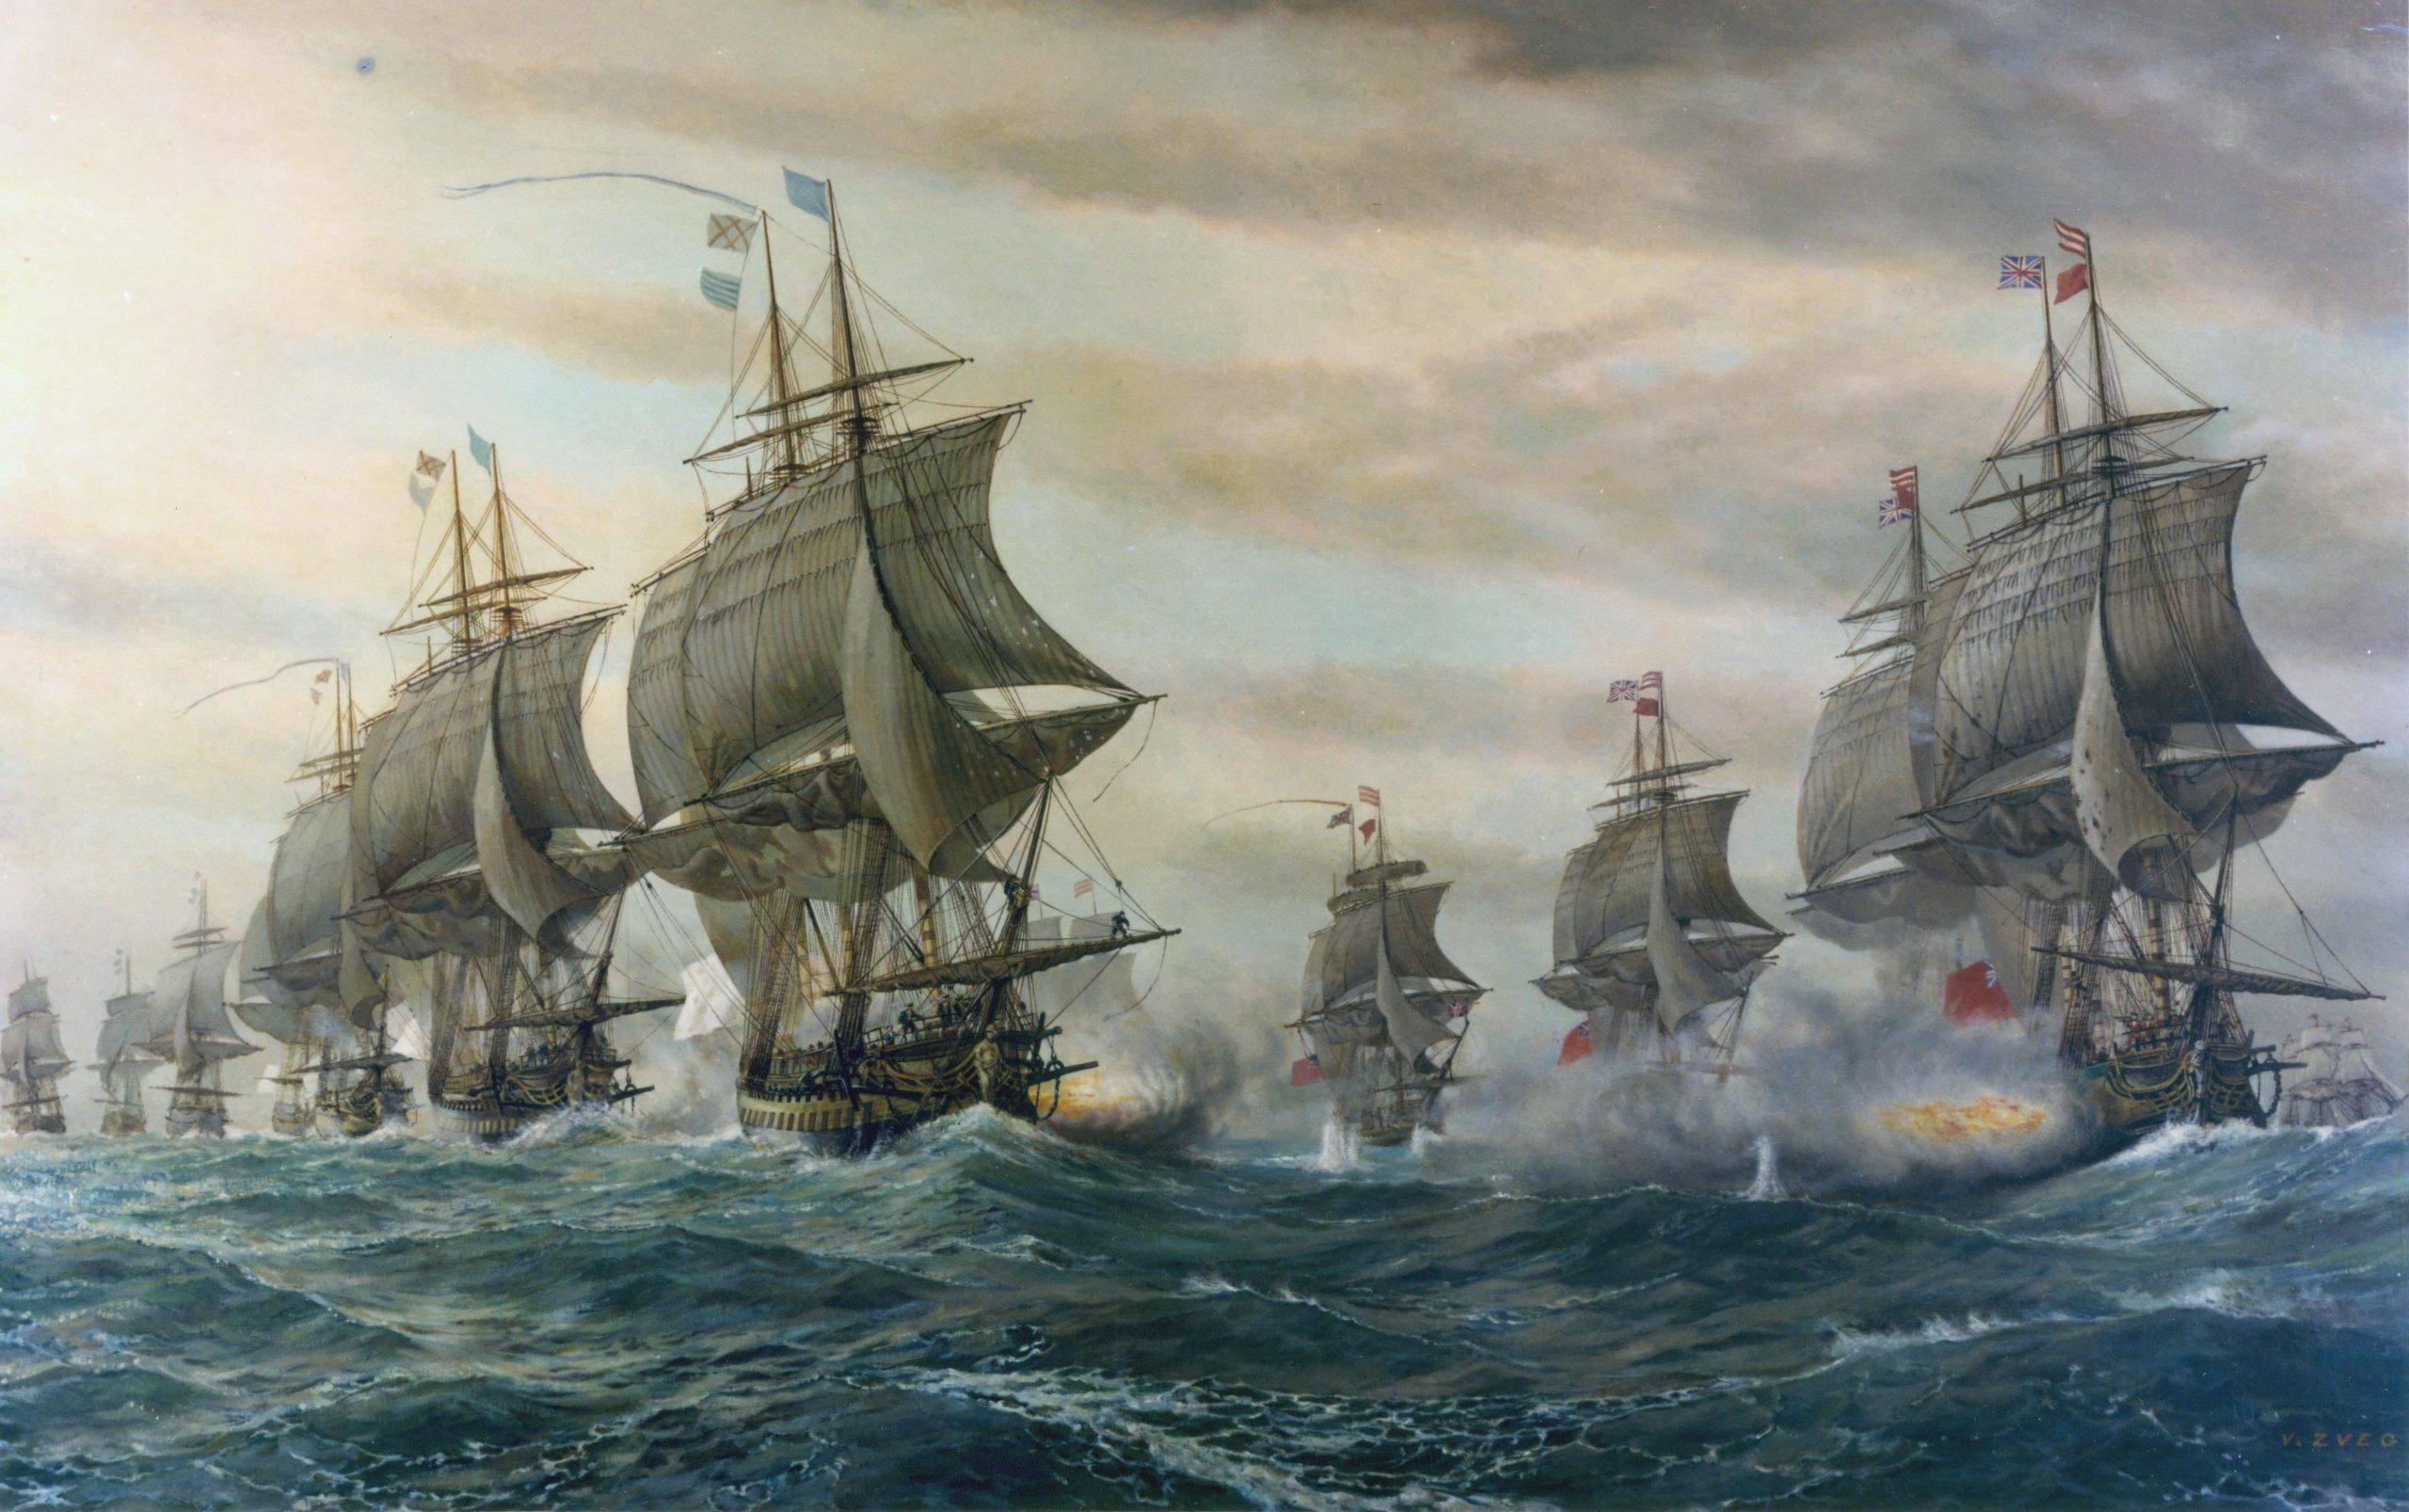 La bataille de Chesapeake est en apparence indécise, mais joue un rôle déterminant dans l'isolement de l'armée anglaise retranchée à Yorktown. Peinture américaine de 1962 au Hampton Roads Naval Museum de Norfolk.